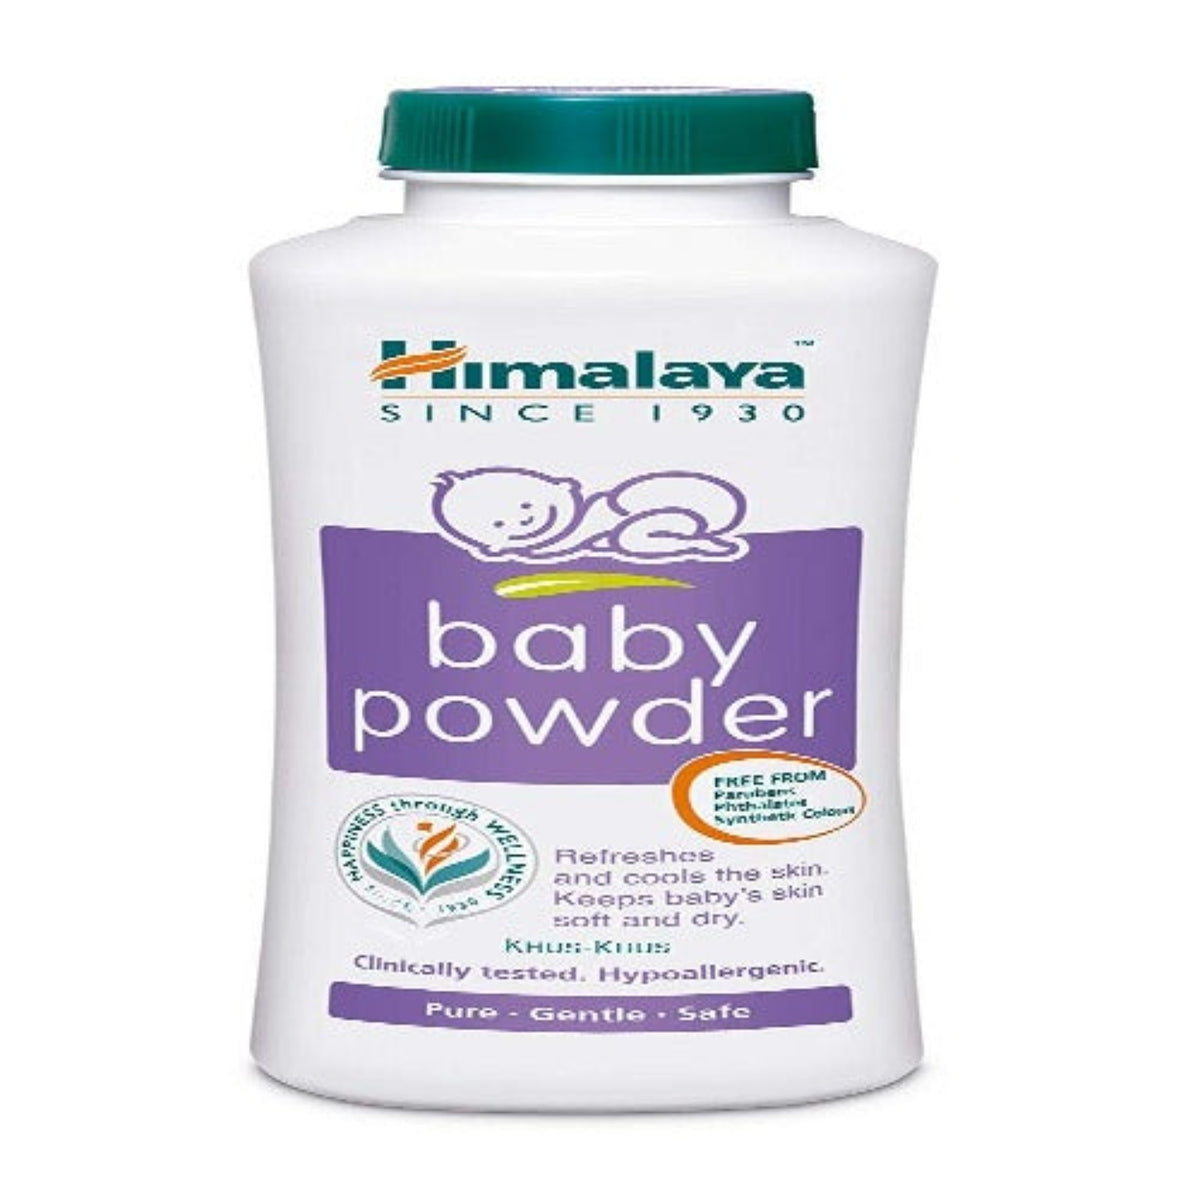 Порошок Himalaya Herbal Ayurvedic Baby Care для сохранения прохлады и свежести